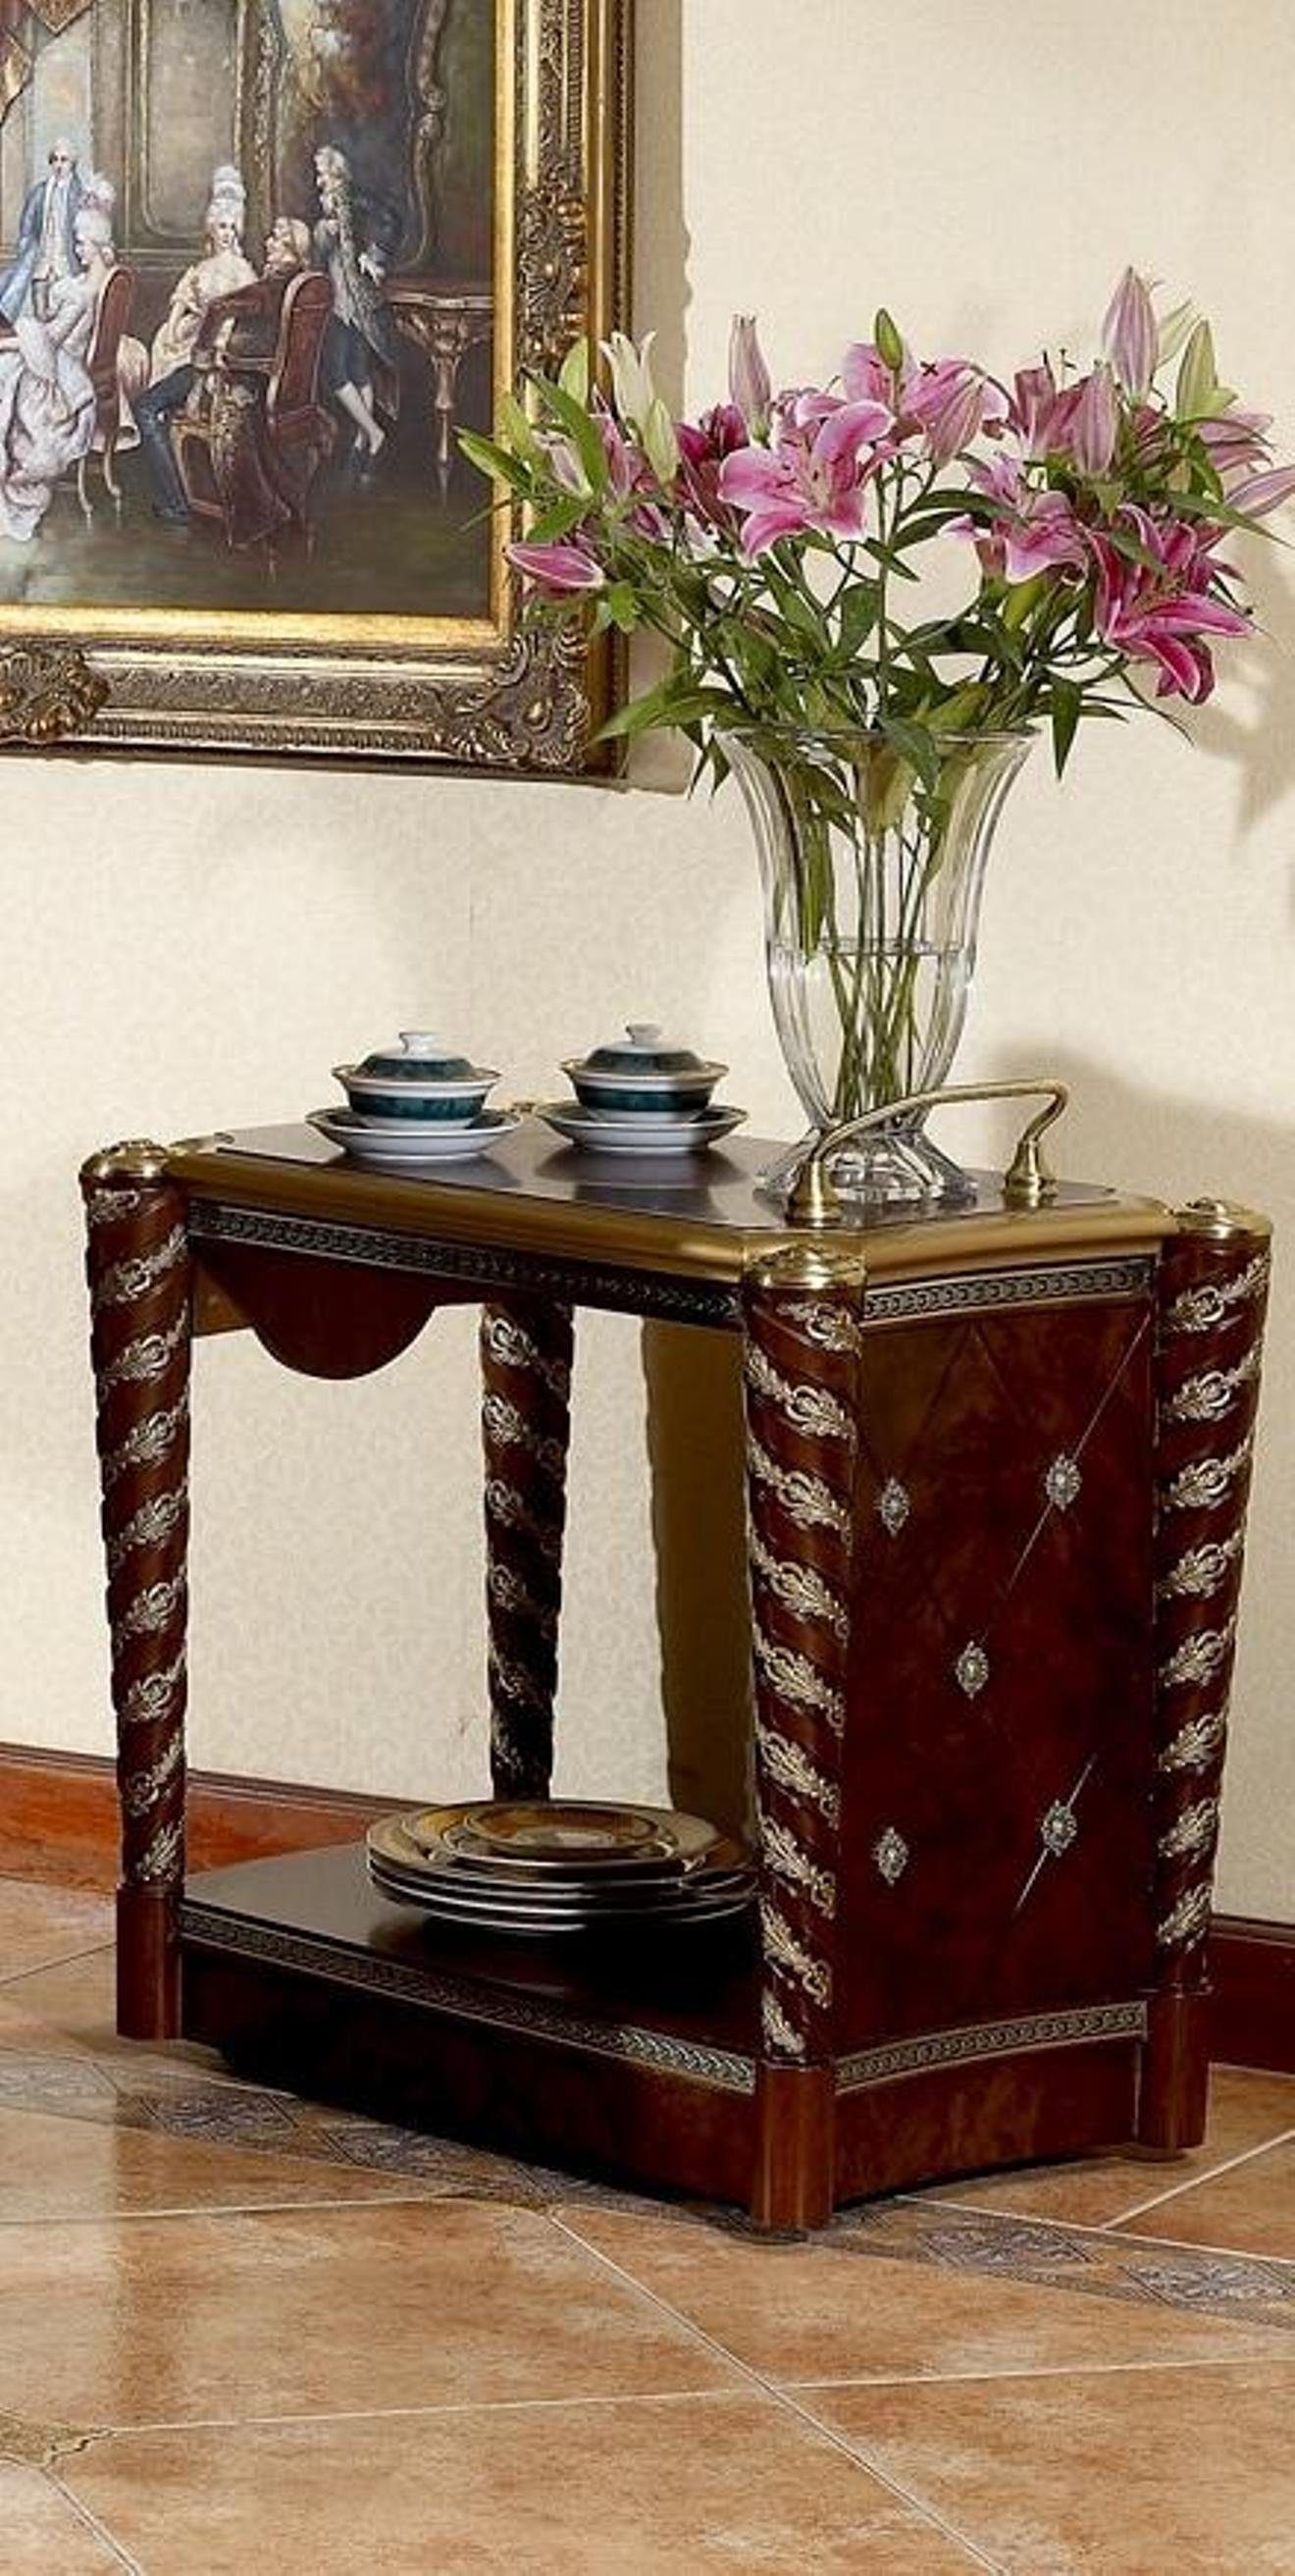 JVmoebel Beistelltisch, Serviertisch Tisch Beistelltisch Luxus Klasse Echtholz Antik Stil